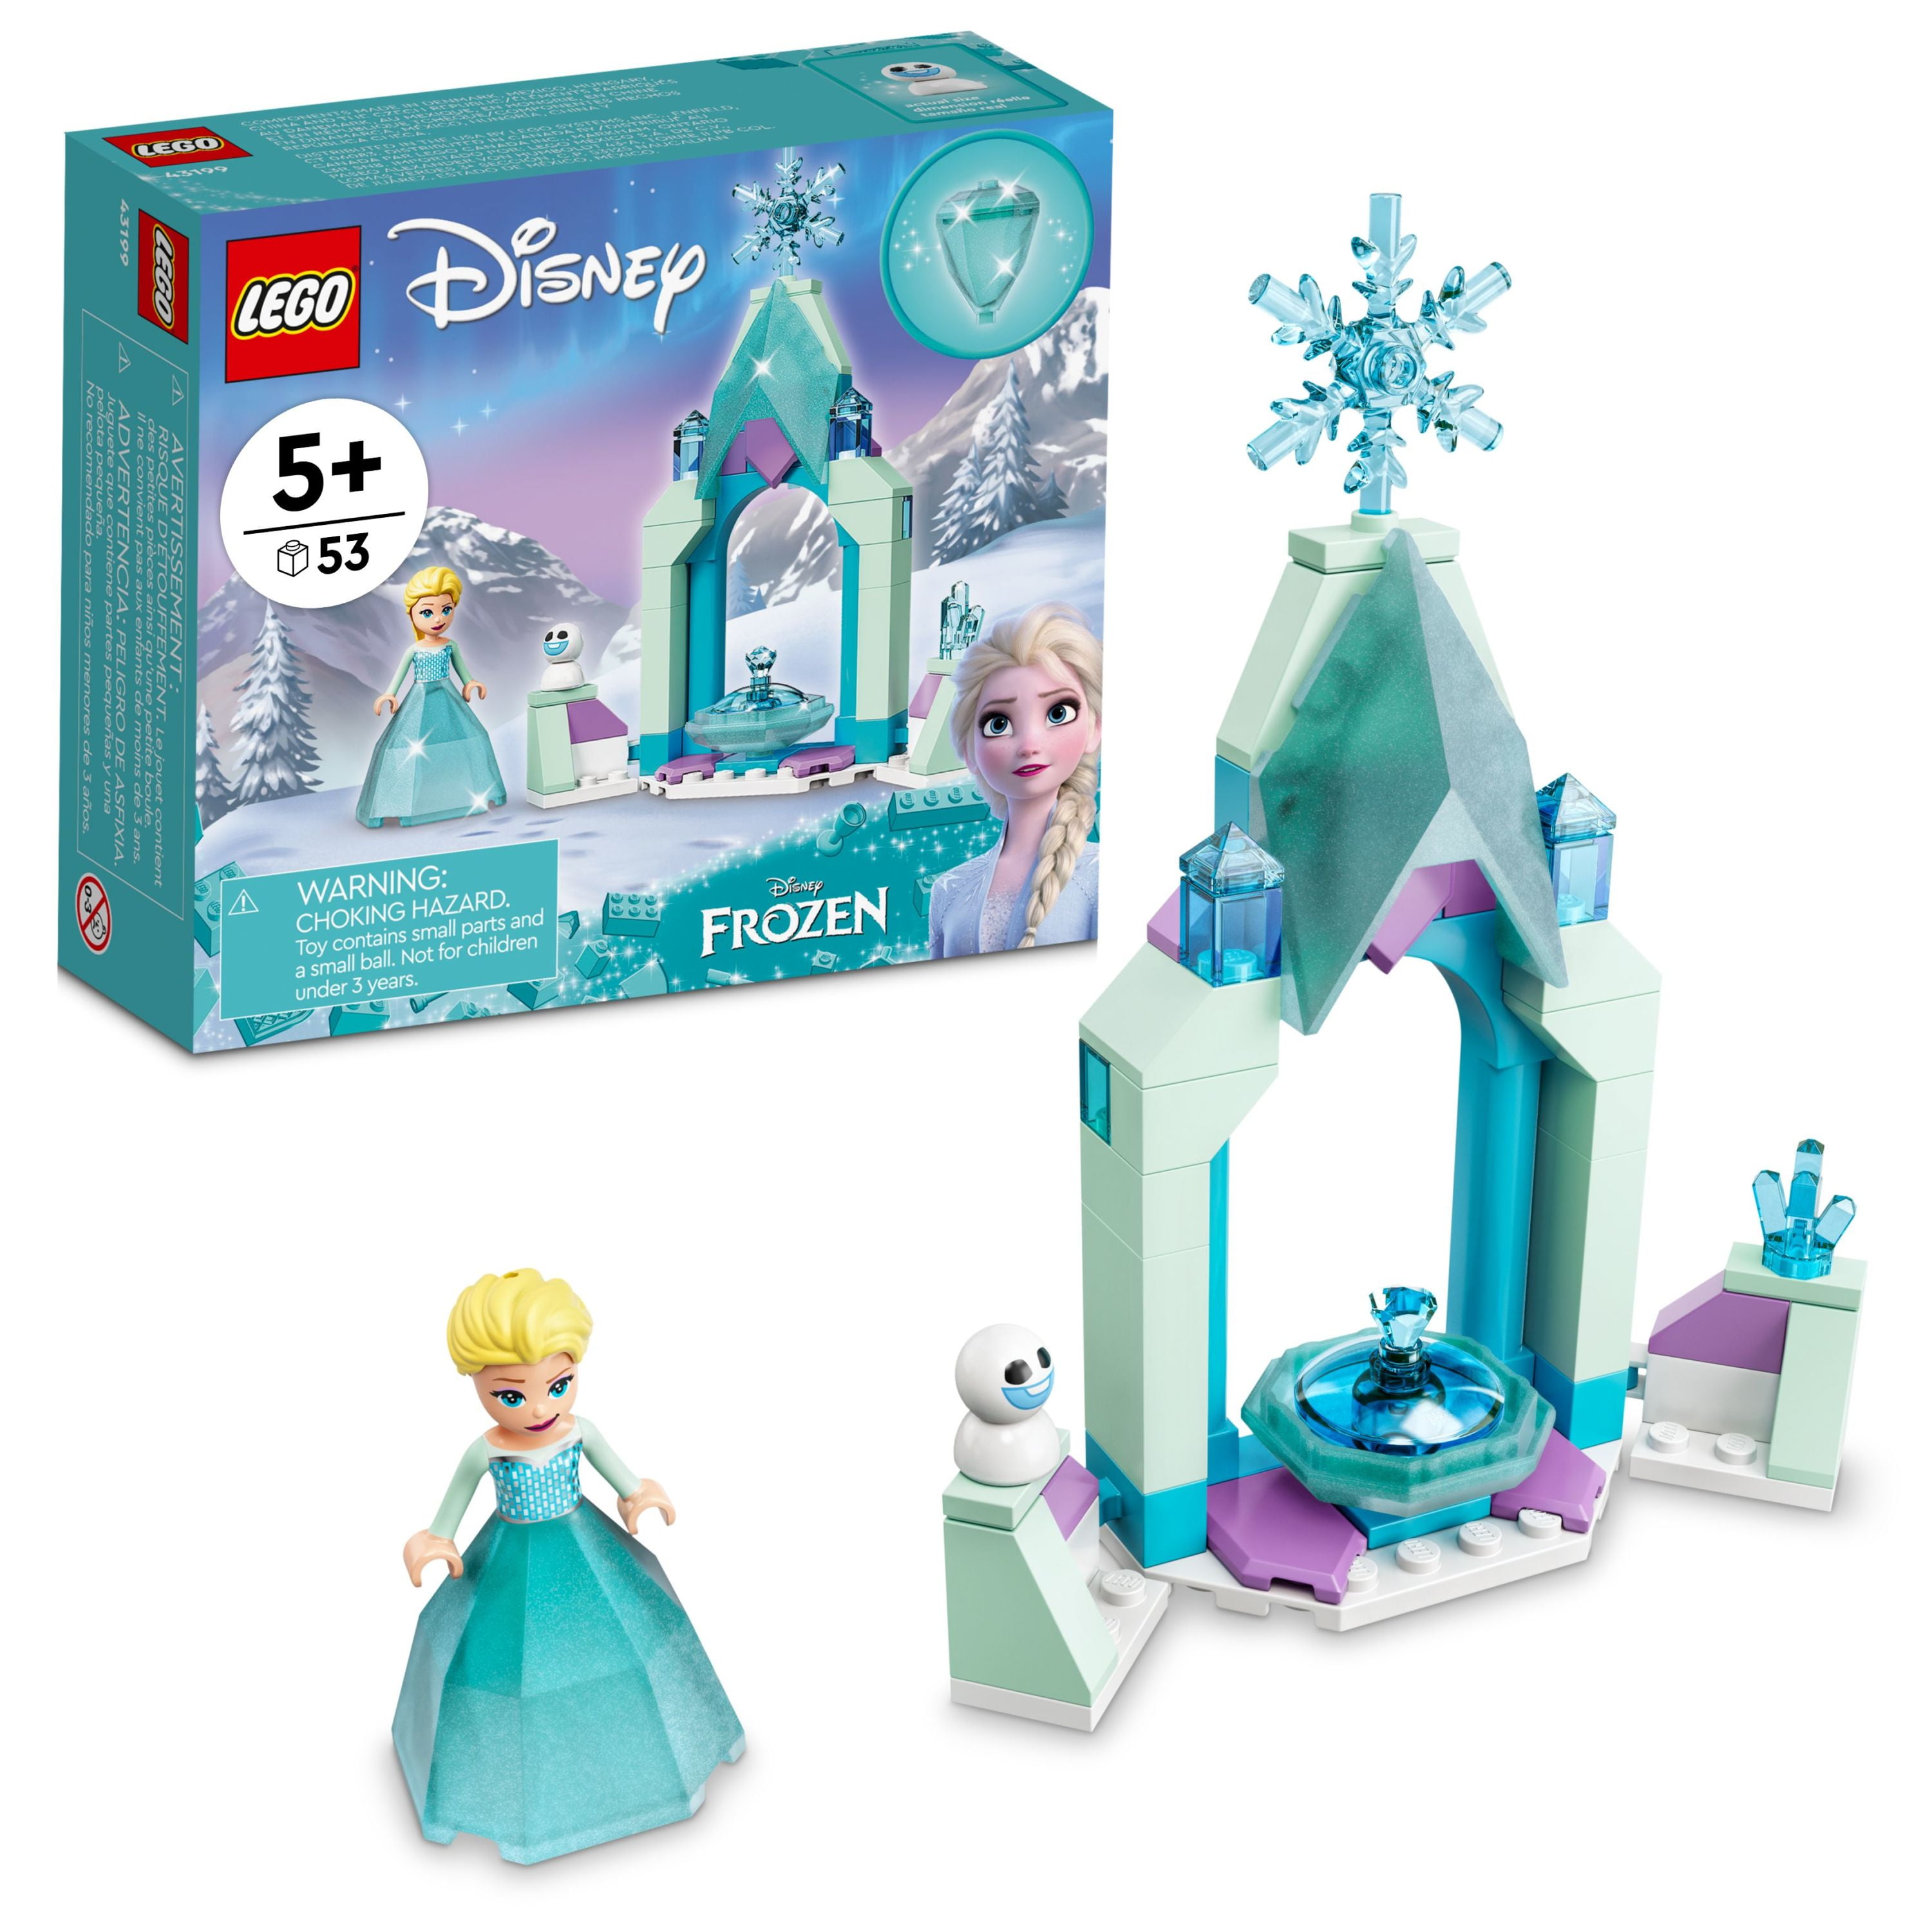 LEGO Disney Frozen Elsas Castle Courtyard Building Set (43199)